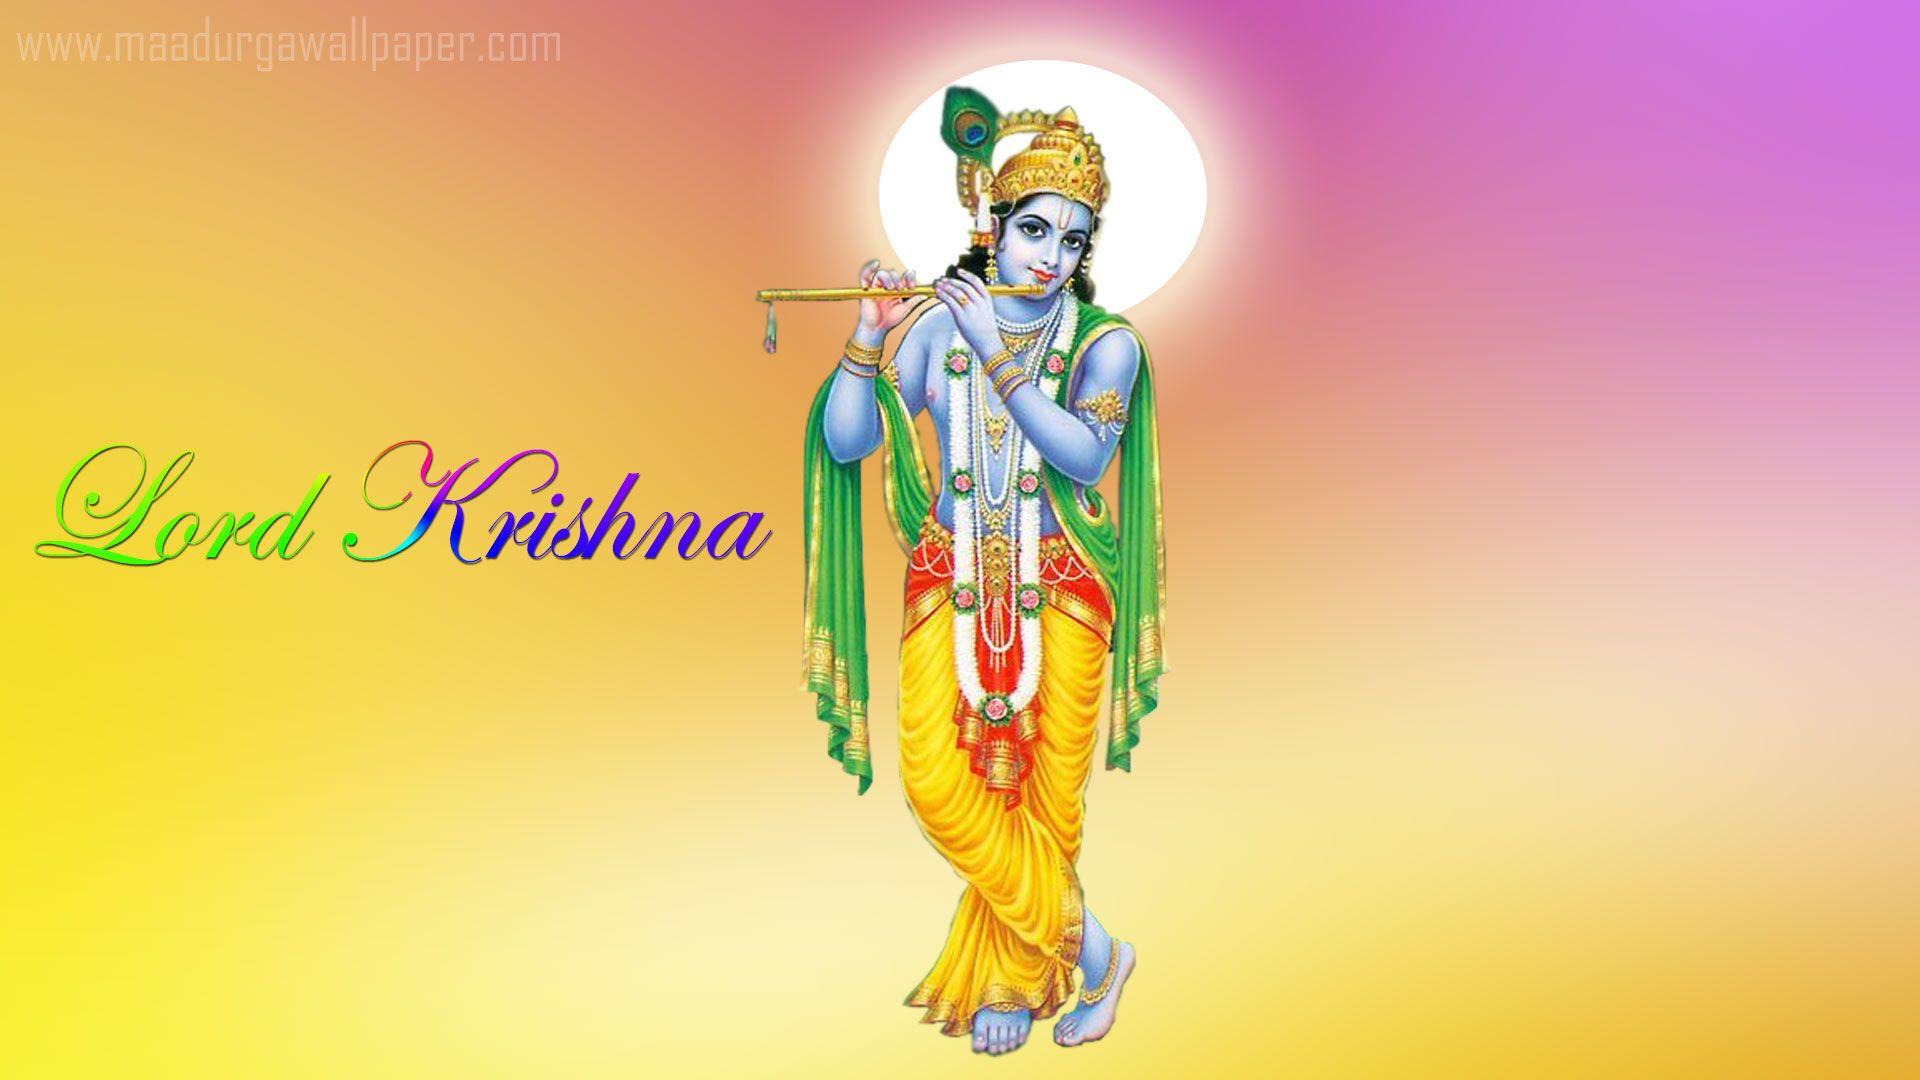 Shri Krishna Wallpaper download free